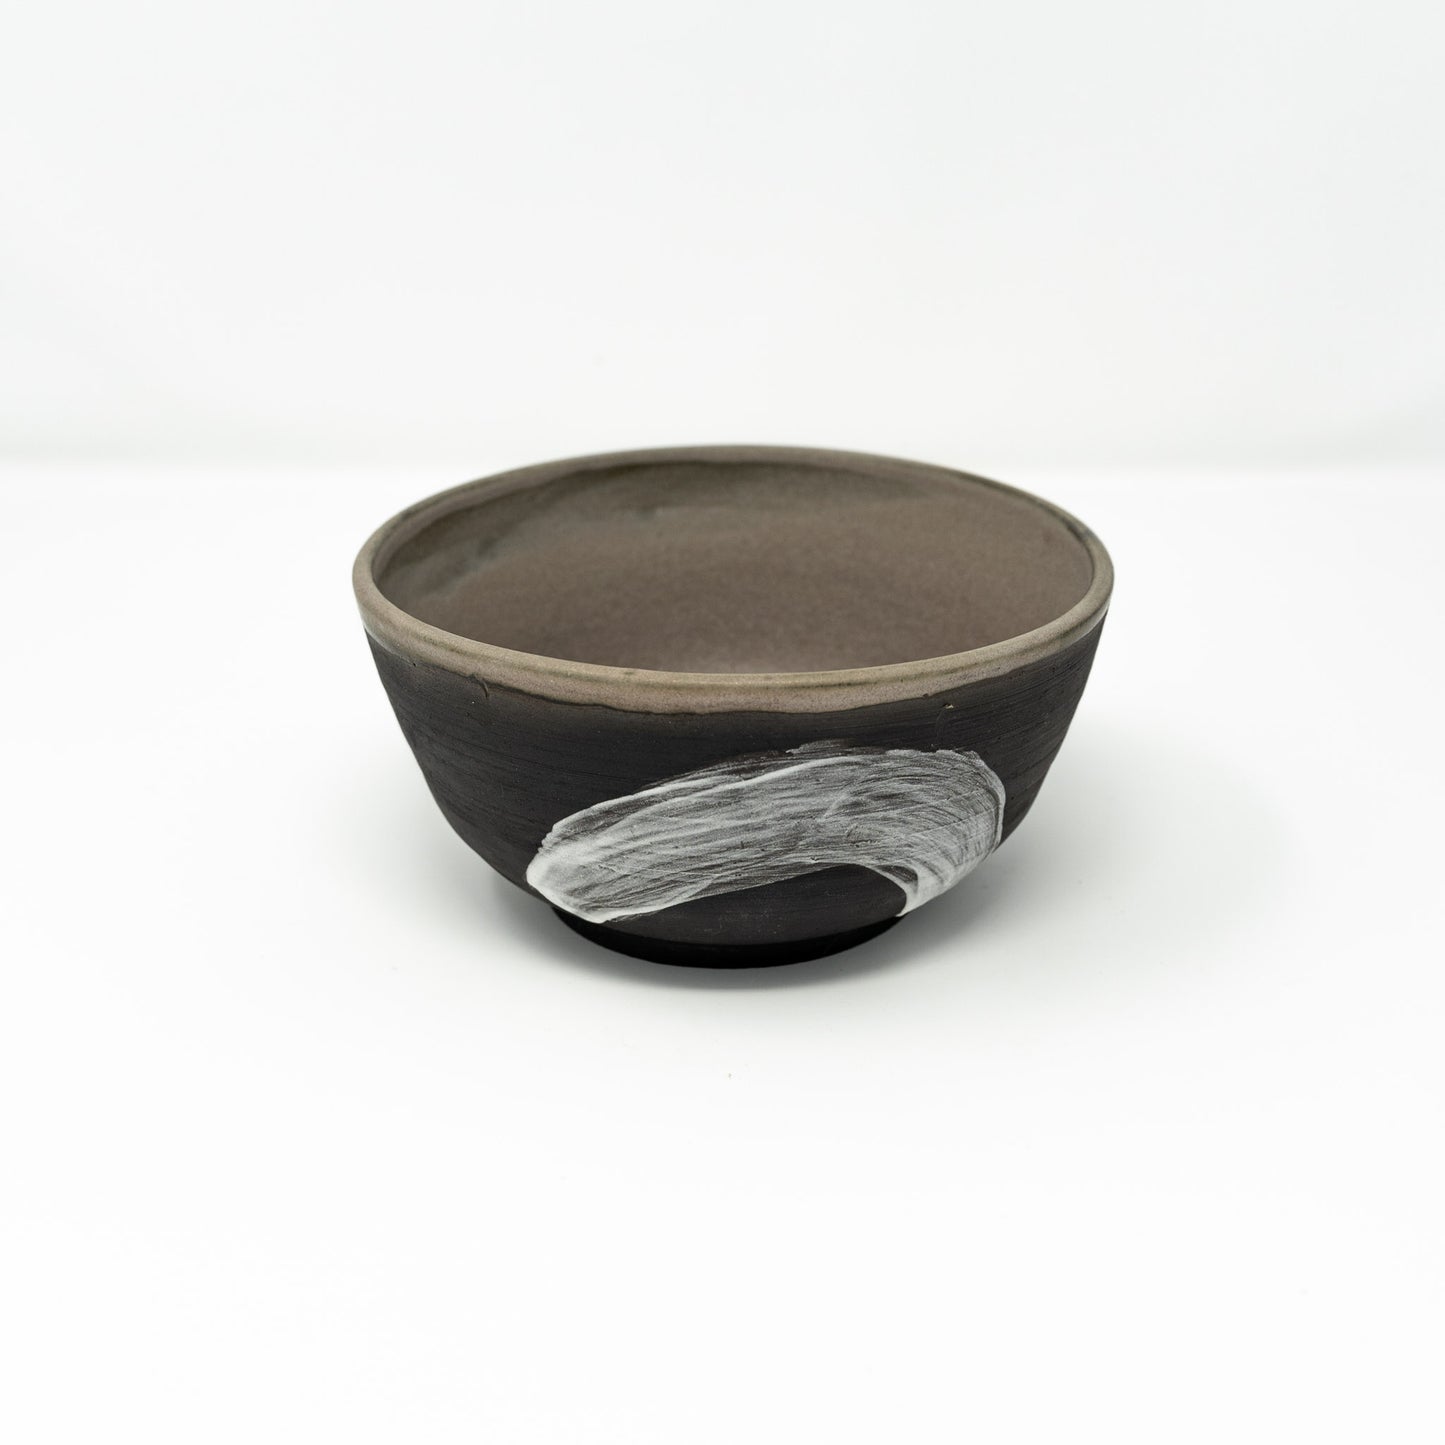 Obsidian bowls